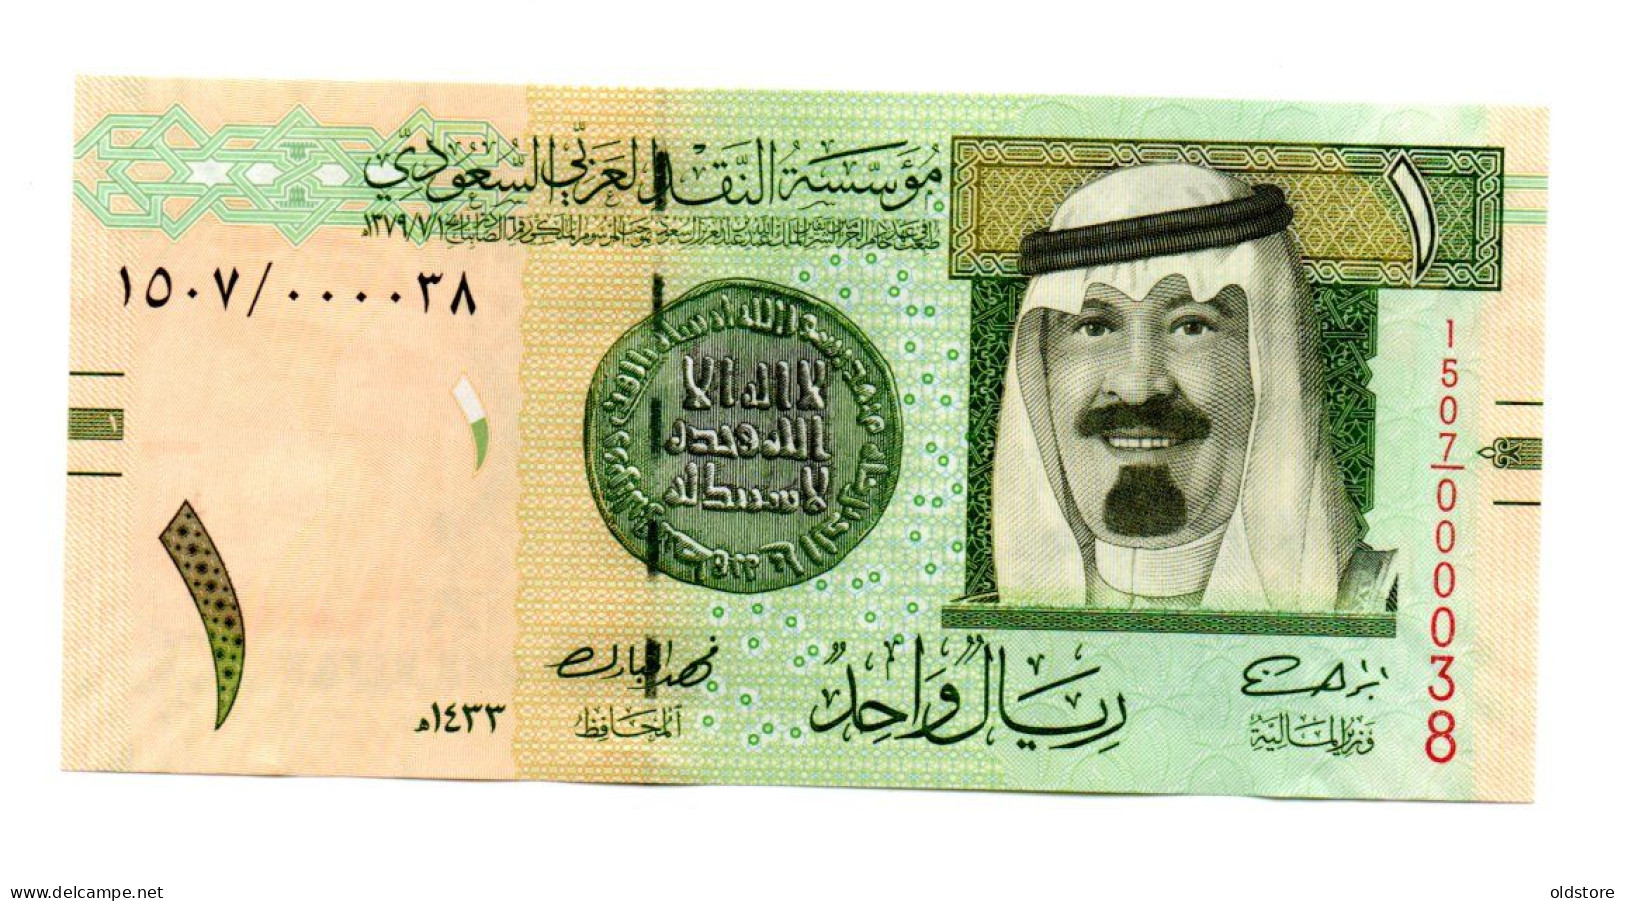 Saudi Arabia Banknotes - One Riyal 2012 Low Serial Number ( 000038 ) - UNC - Arabie Saoudite